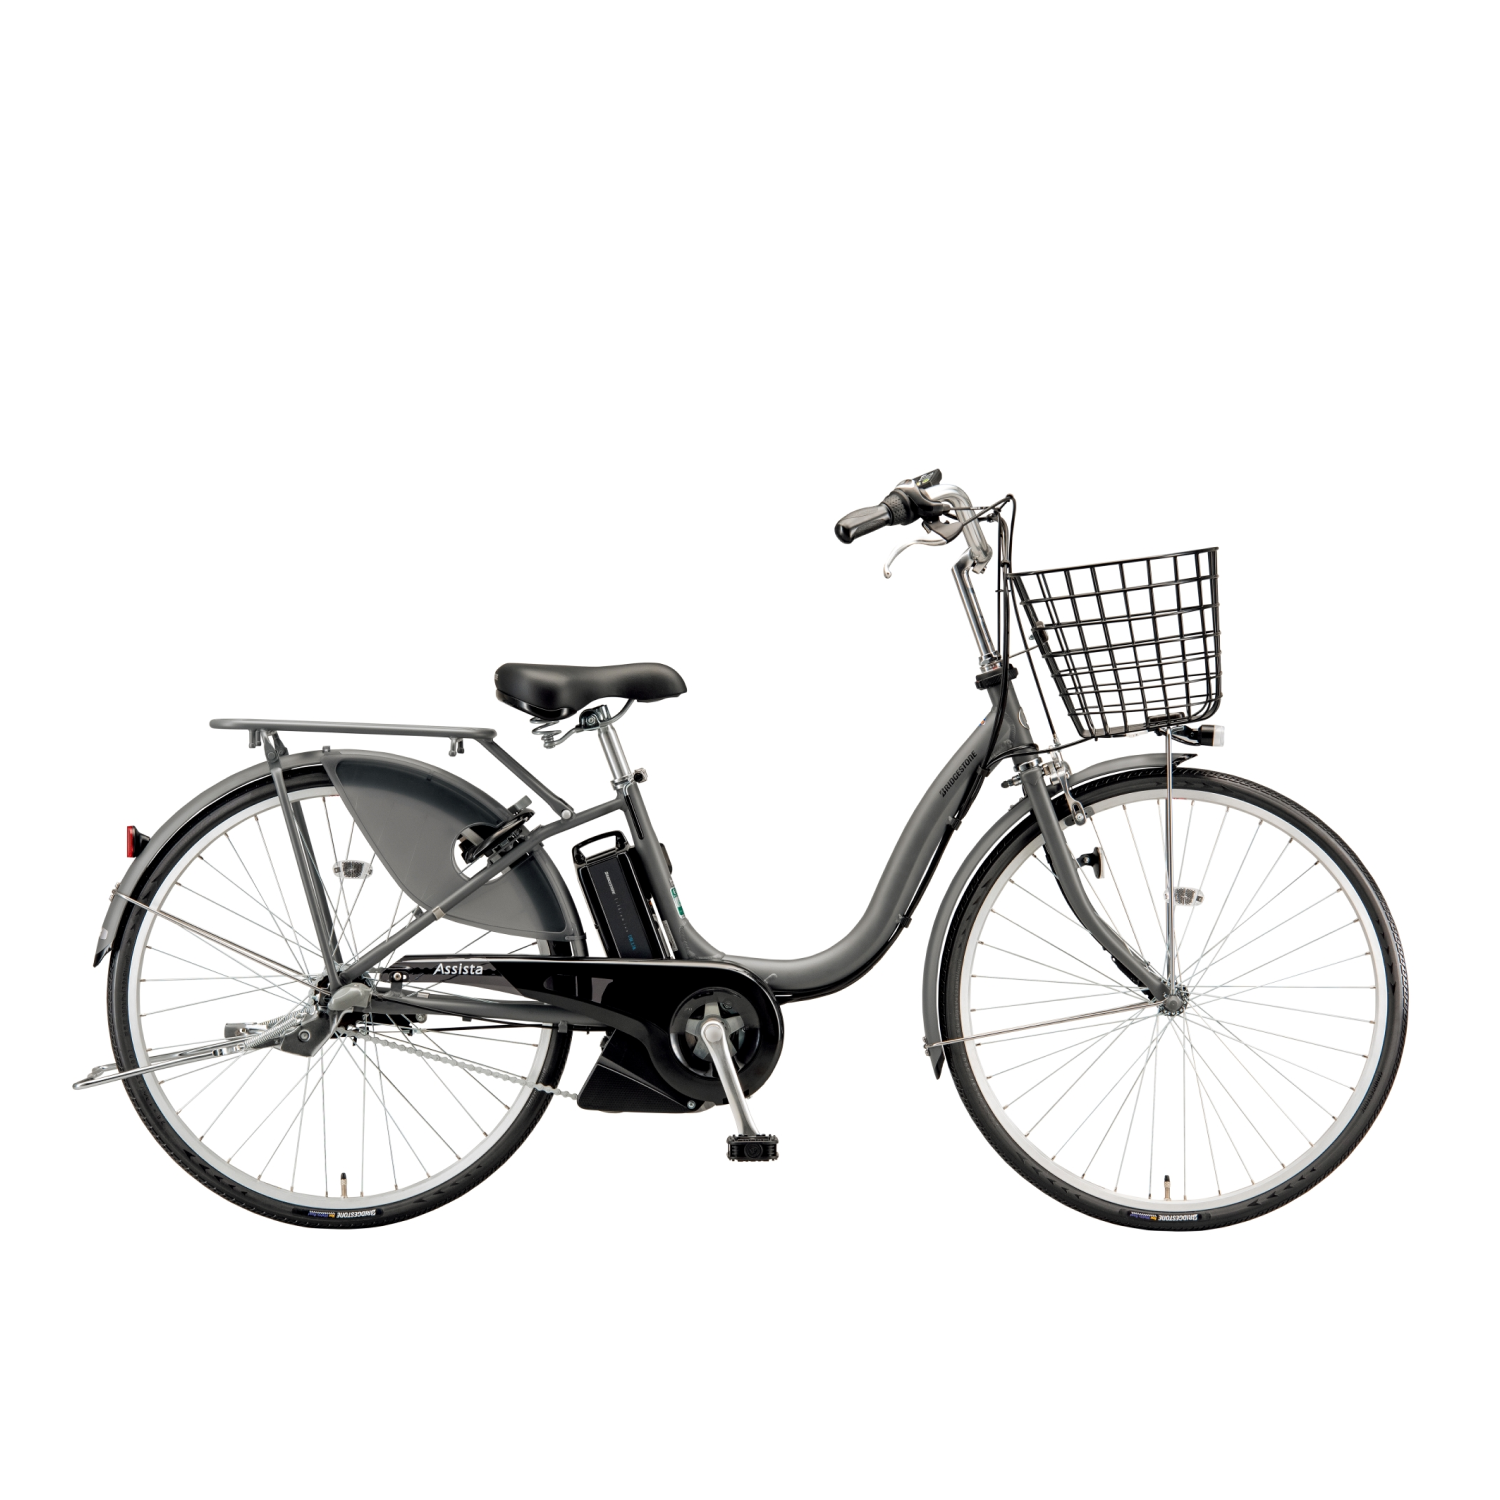 ブリジストン 電動自転車 Assista 26インチ バッテリー6.2Ah 茶色購入を検討しております